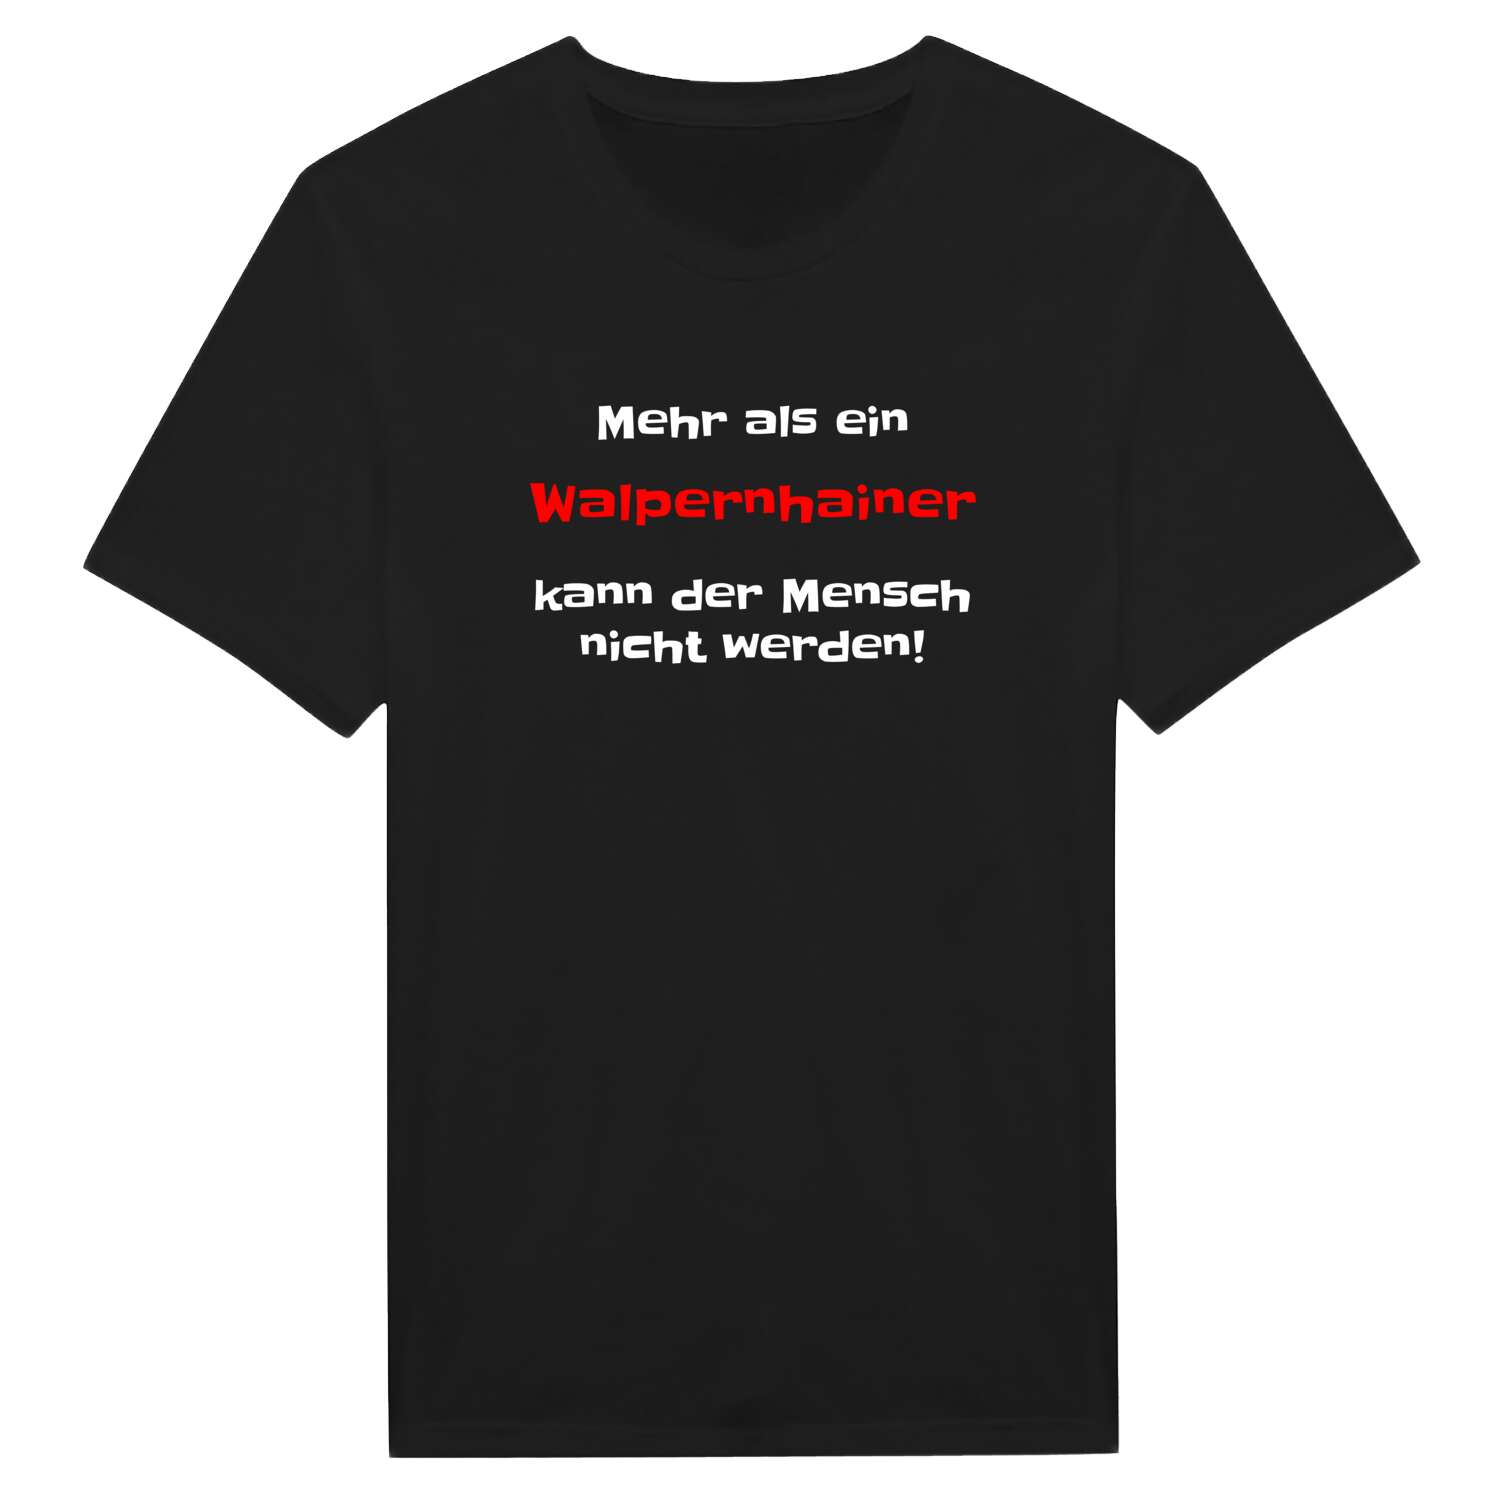 Walpernhain T-Shirt »Mehr als ein«